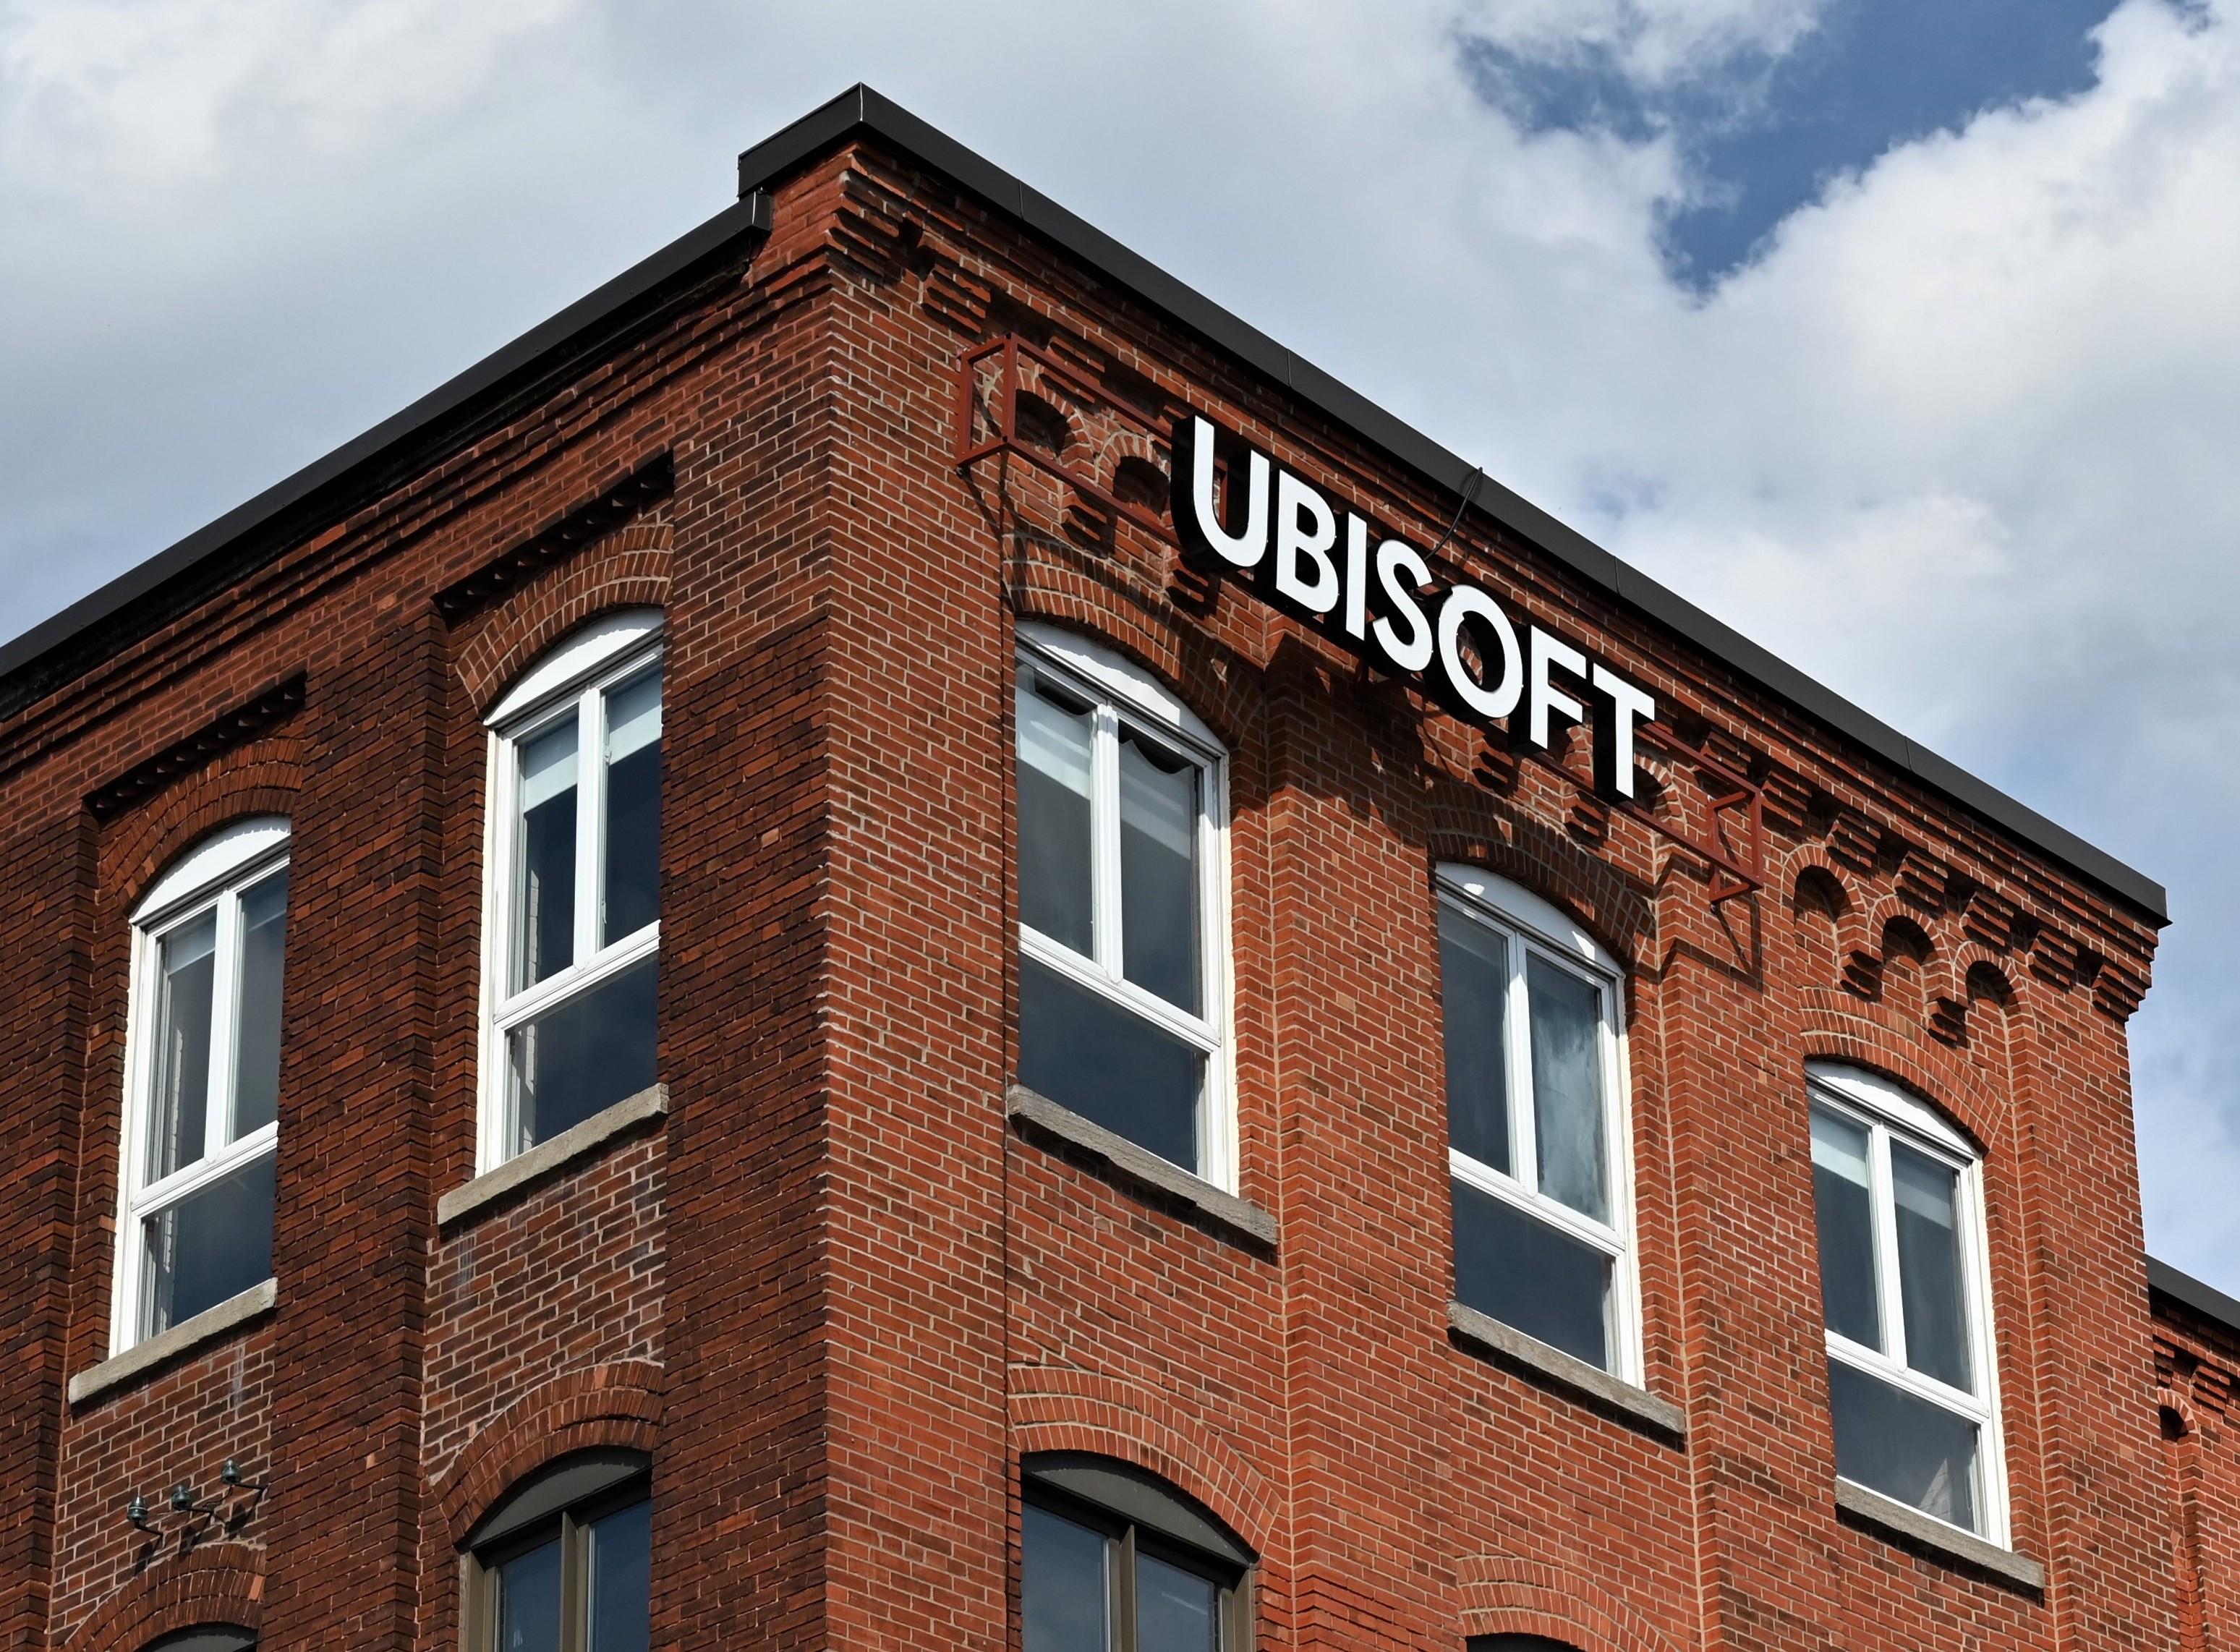 Fegyveres ejtett túszokat az Ubisoft montreali irodájában